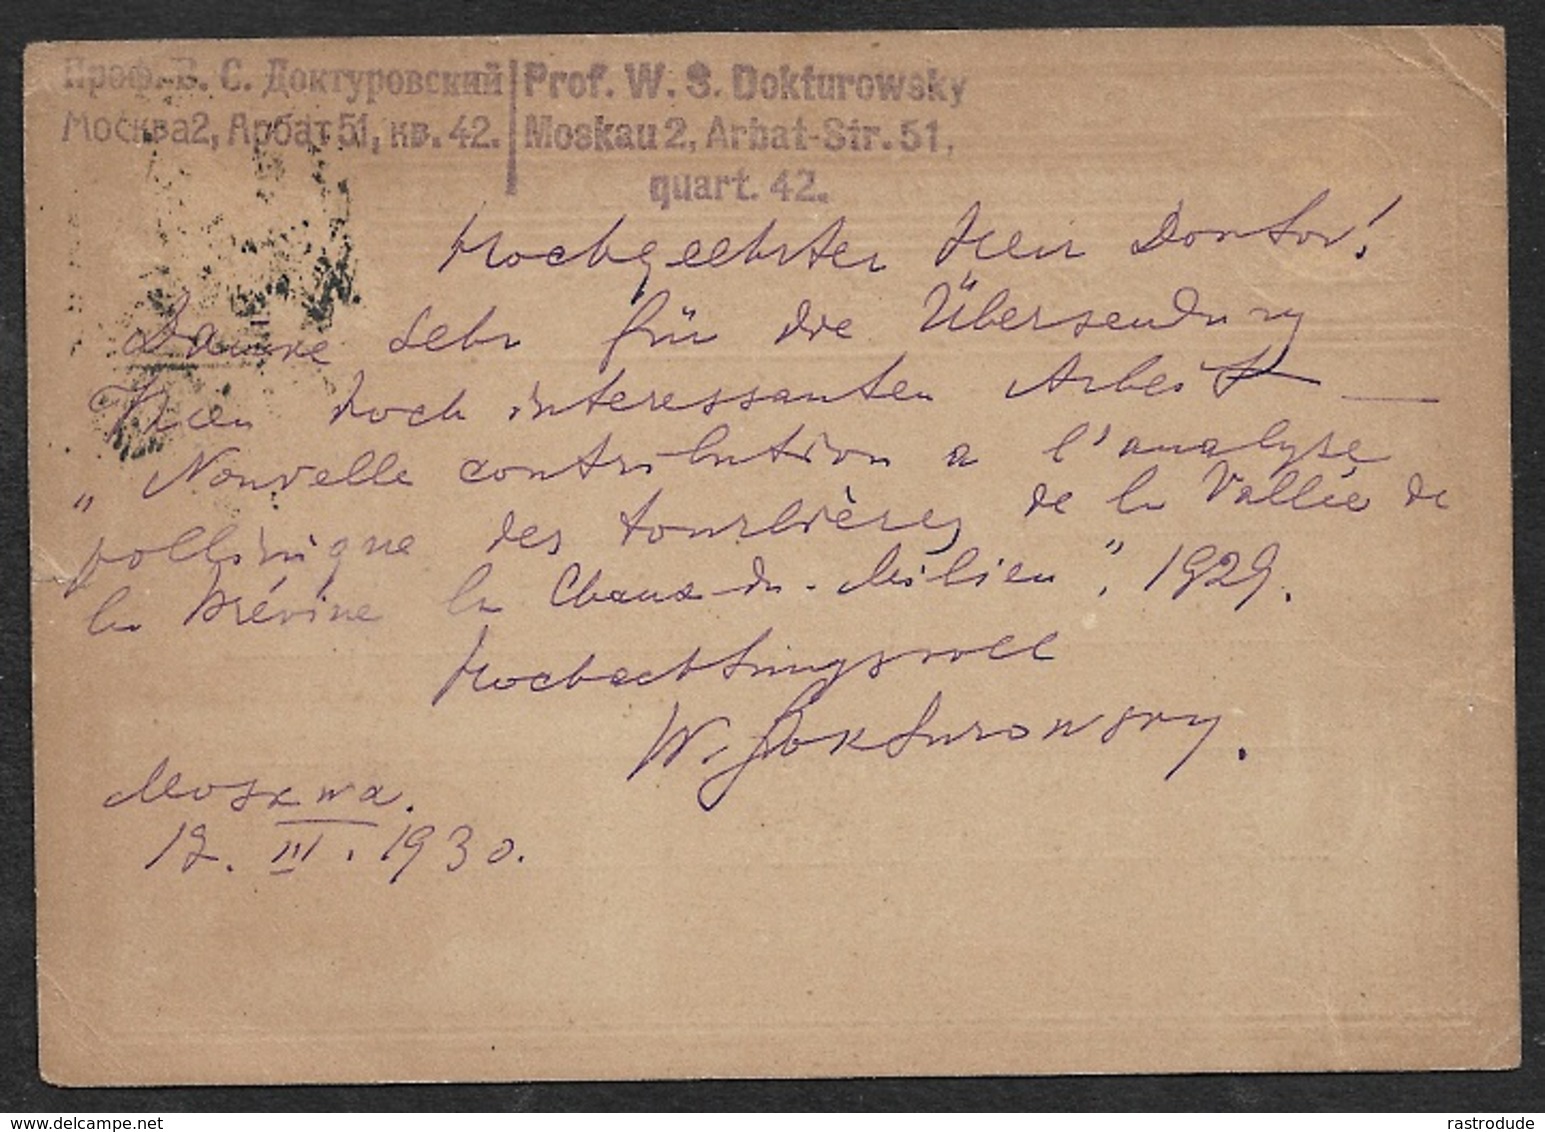 1930 SOVIET UNION GS Mi. P 72 - N. NEUCHATEL, SCHWEIZ - V. PROF. DOKTUROWSKY An PROF. HENRI SPINNER - BOTANIK - Lettres & Documents